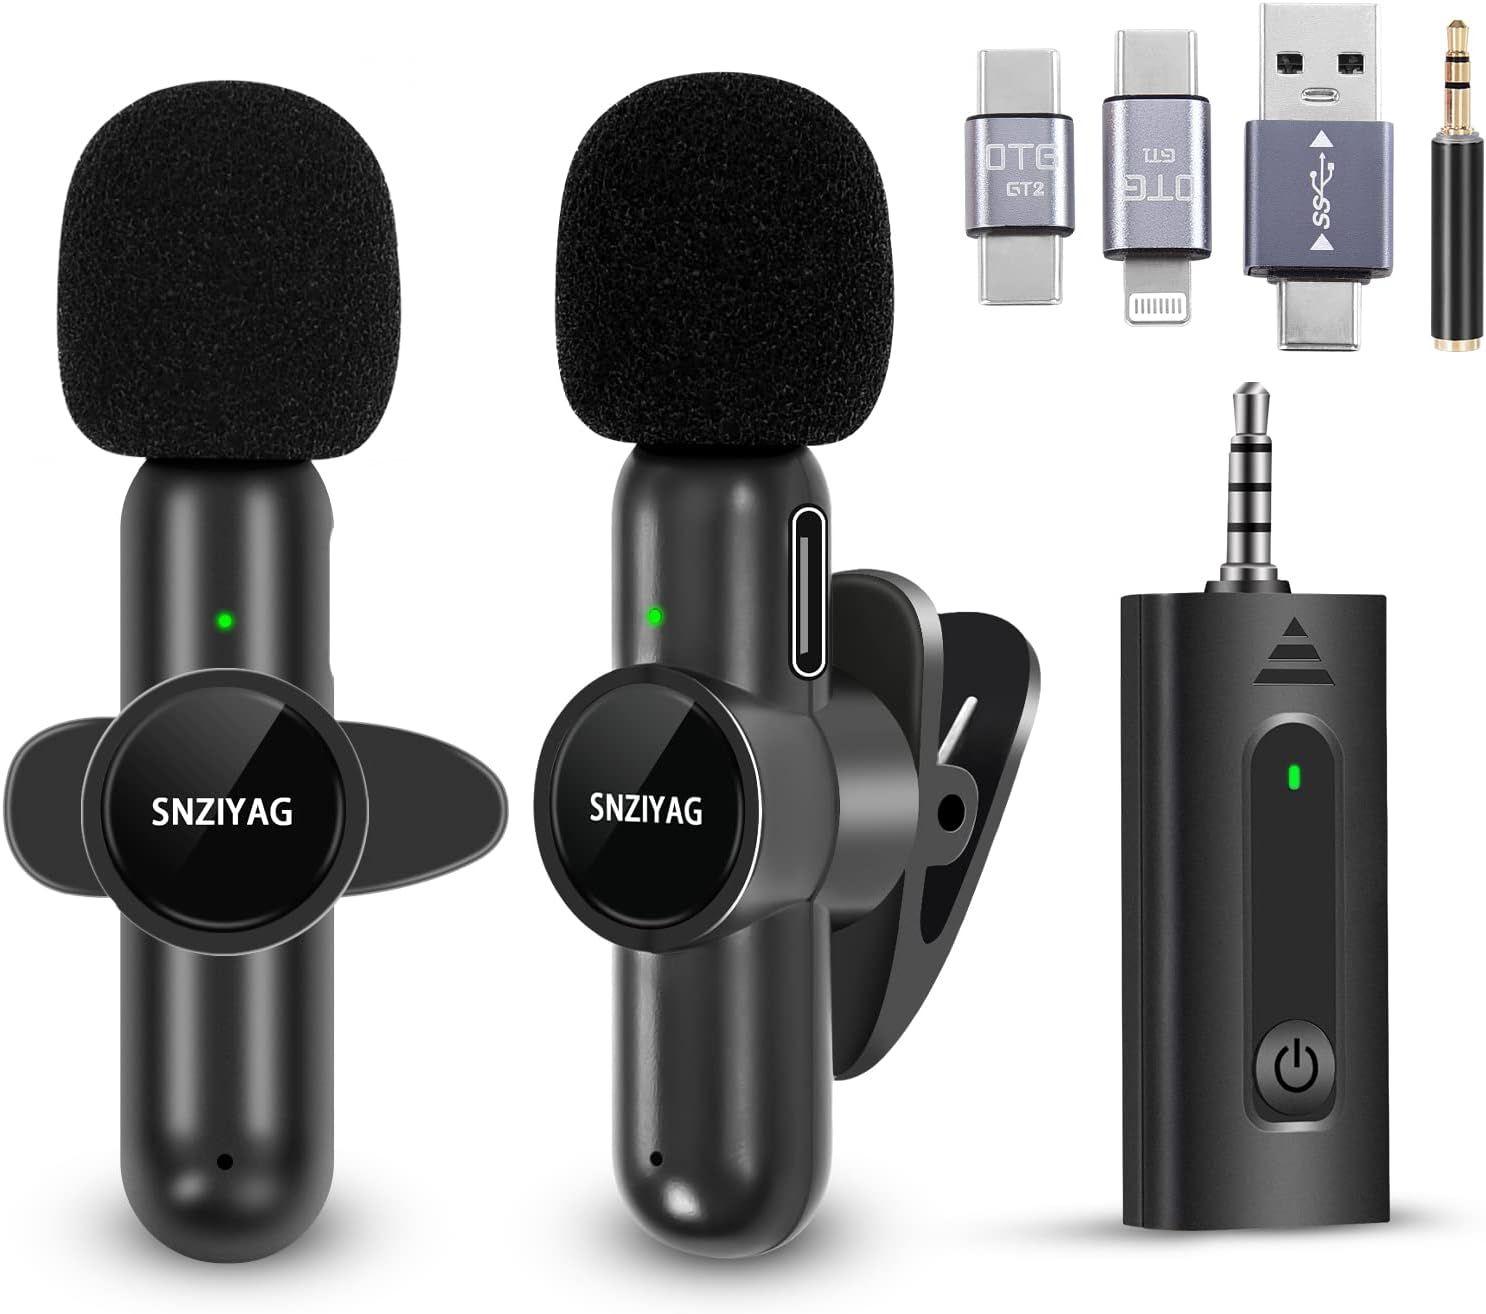 AIKELA Double microphone sans fil pour iPhone, Android, appareil photo,  micro cravate sans fil Plug-Play 2,4 G Ultra faible retard puce de  réduction du bruit intégrée 7 h de temps de fonctionnement